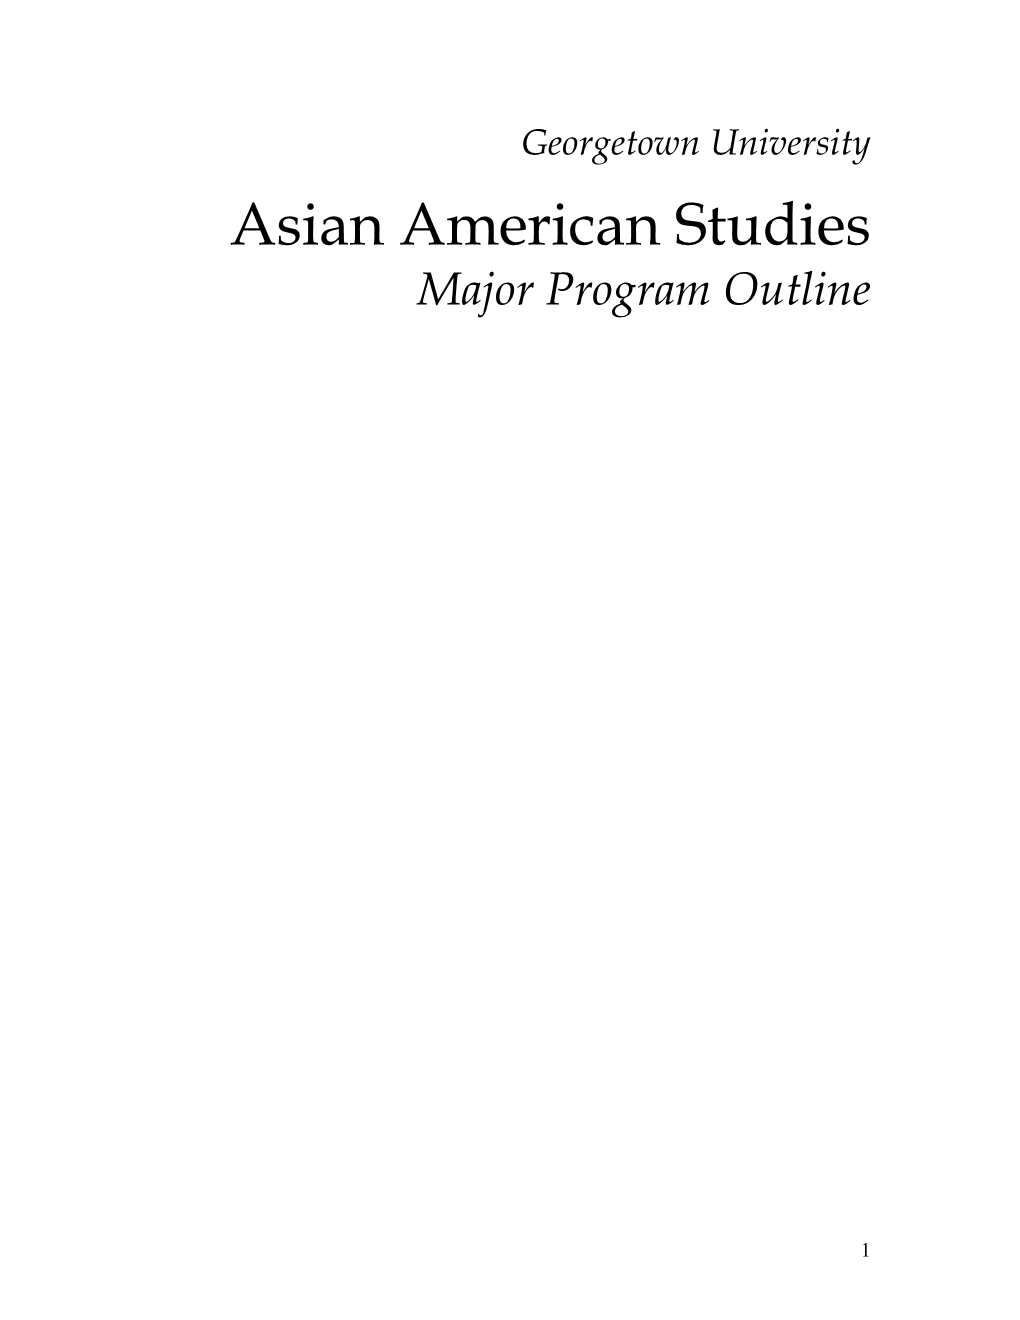 Asian American Studies Major Program Outline